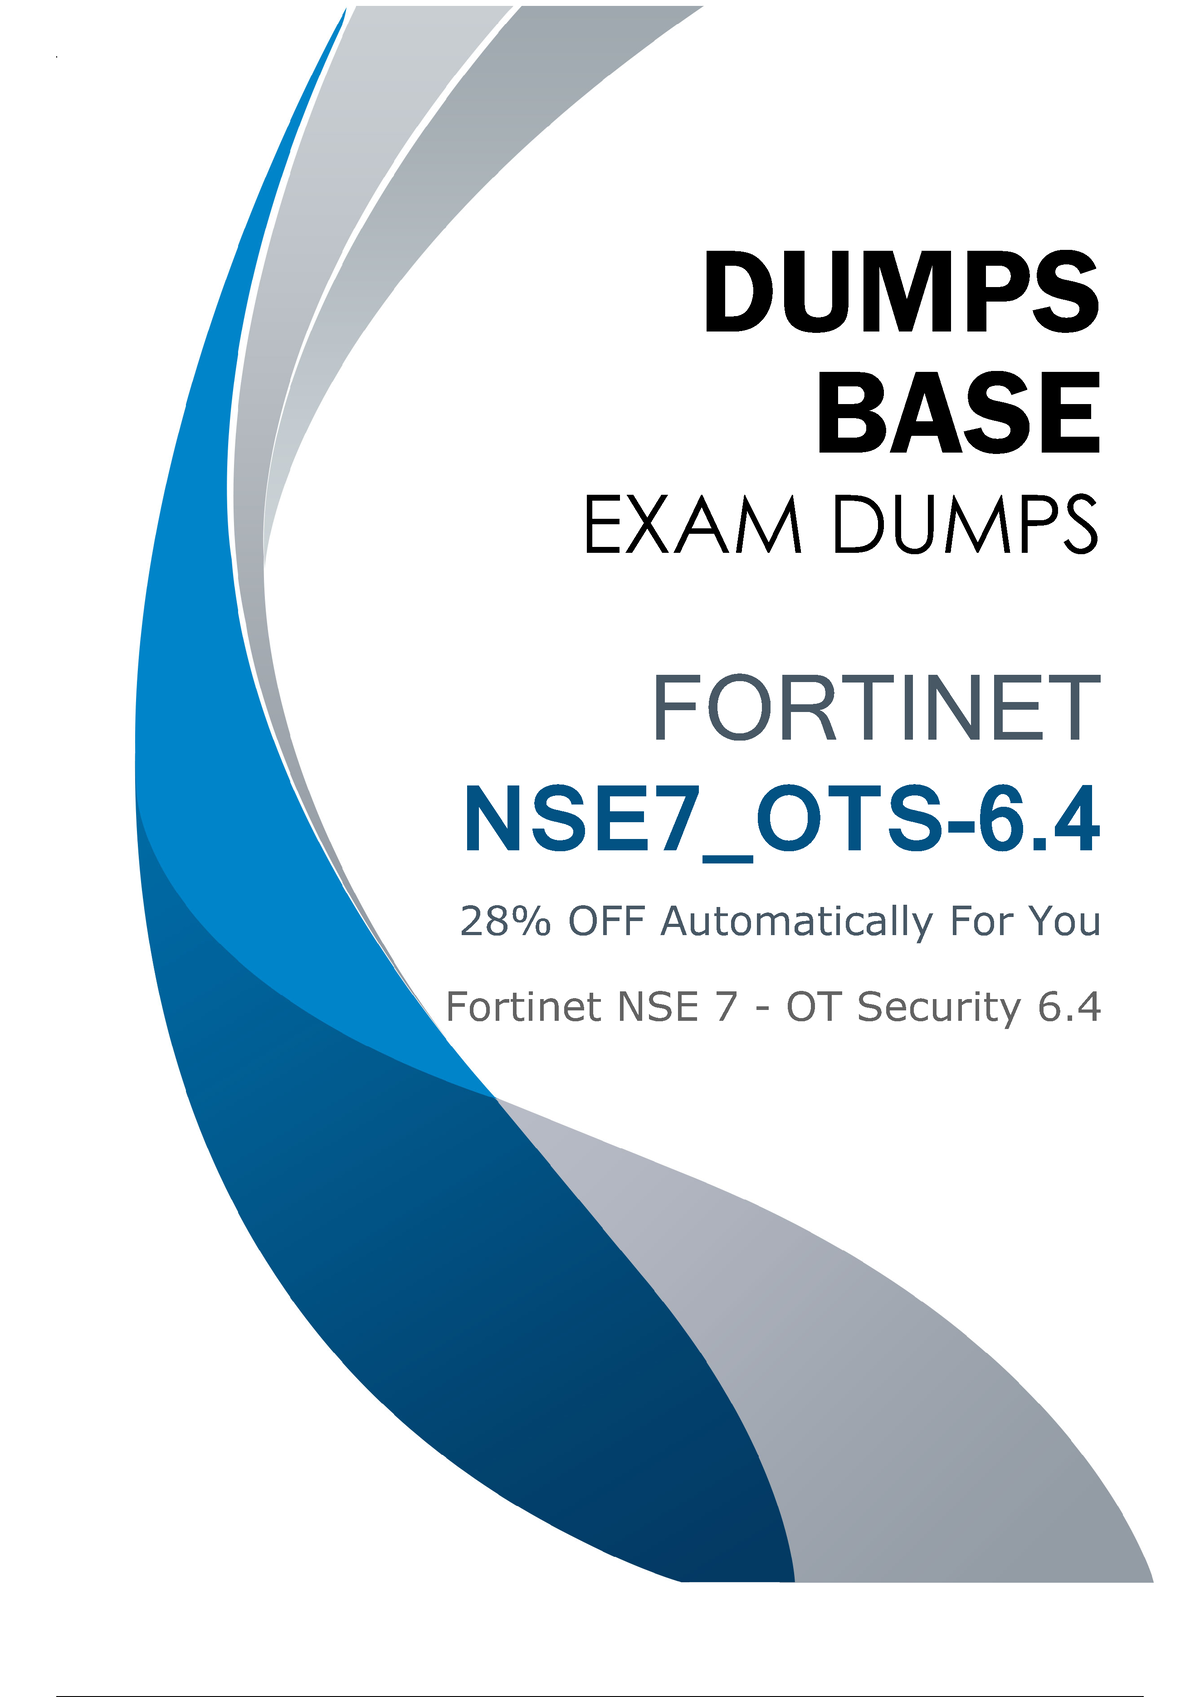 NSE7_OTS-7.2 Zertifizierung